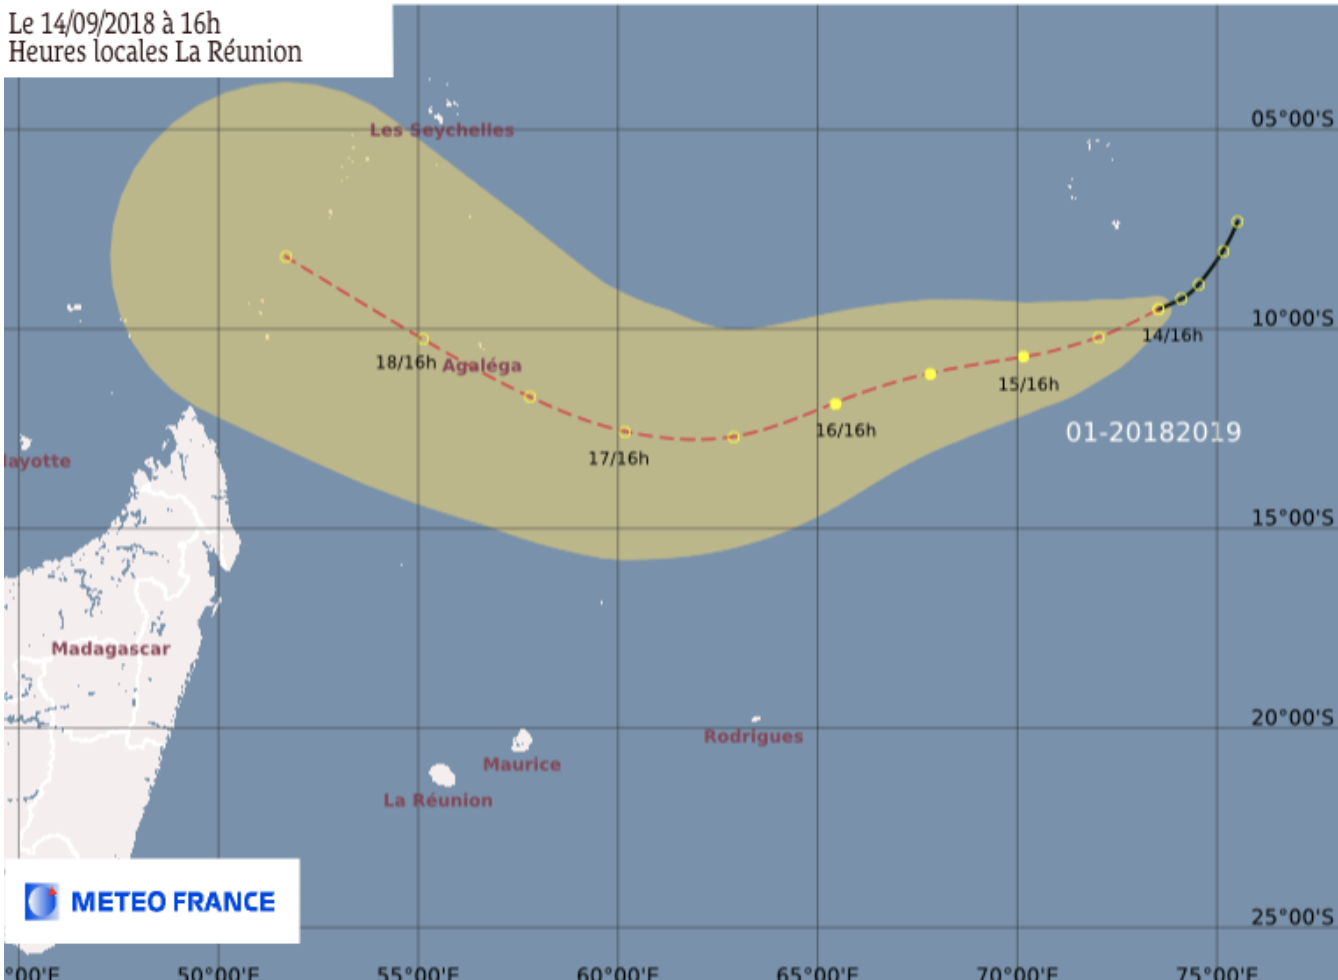 La perturbation tropicale est à 2290 km de La Réunion